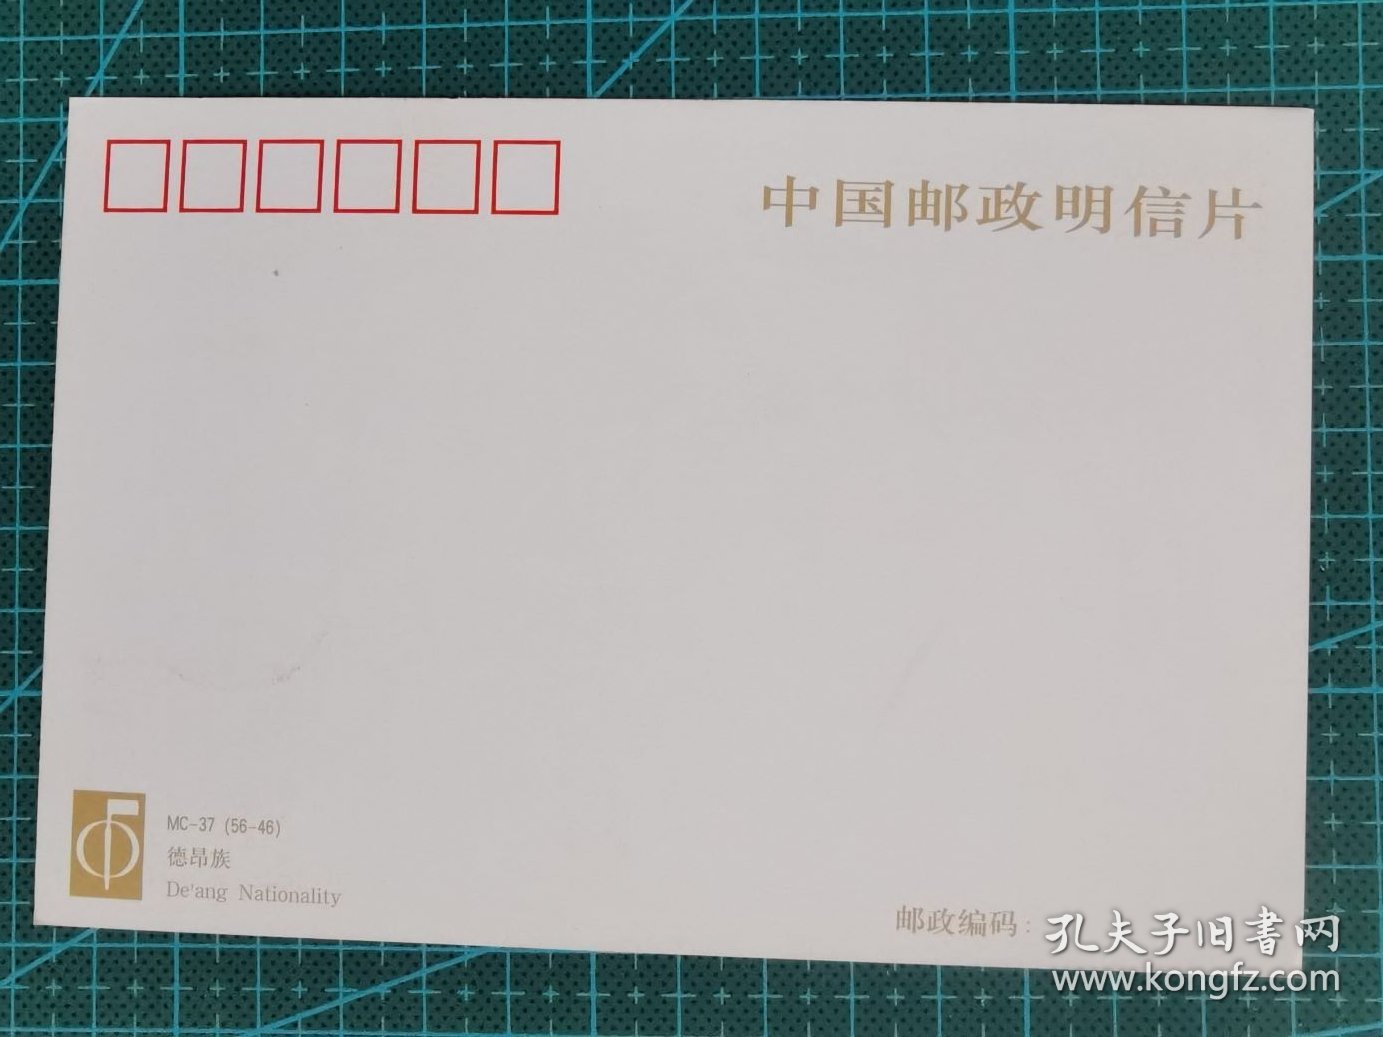 故纸堆936 《中华人民共和国成立五十周年--民族大团结》纪念邮票极限片  1999-11  德昂族（56-46）J   销1999年10月1日原地戳